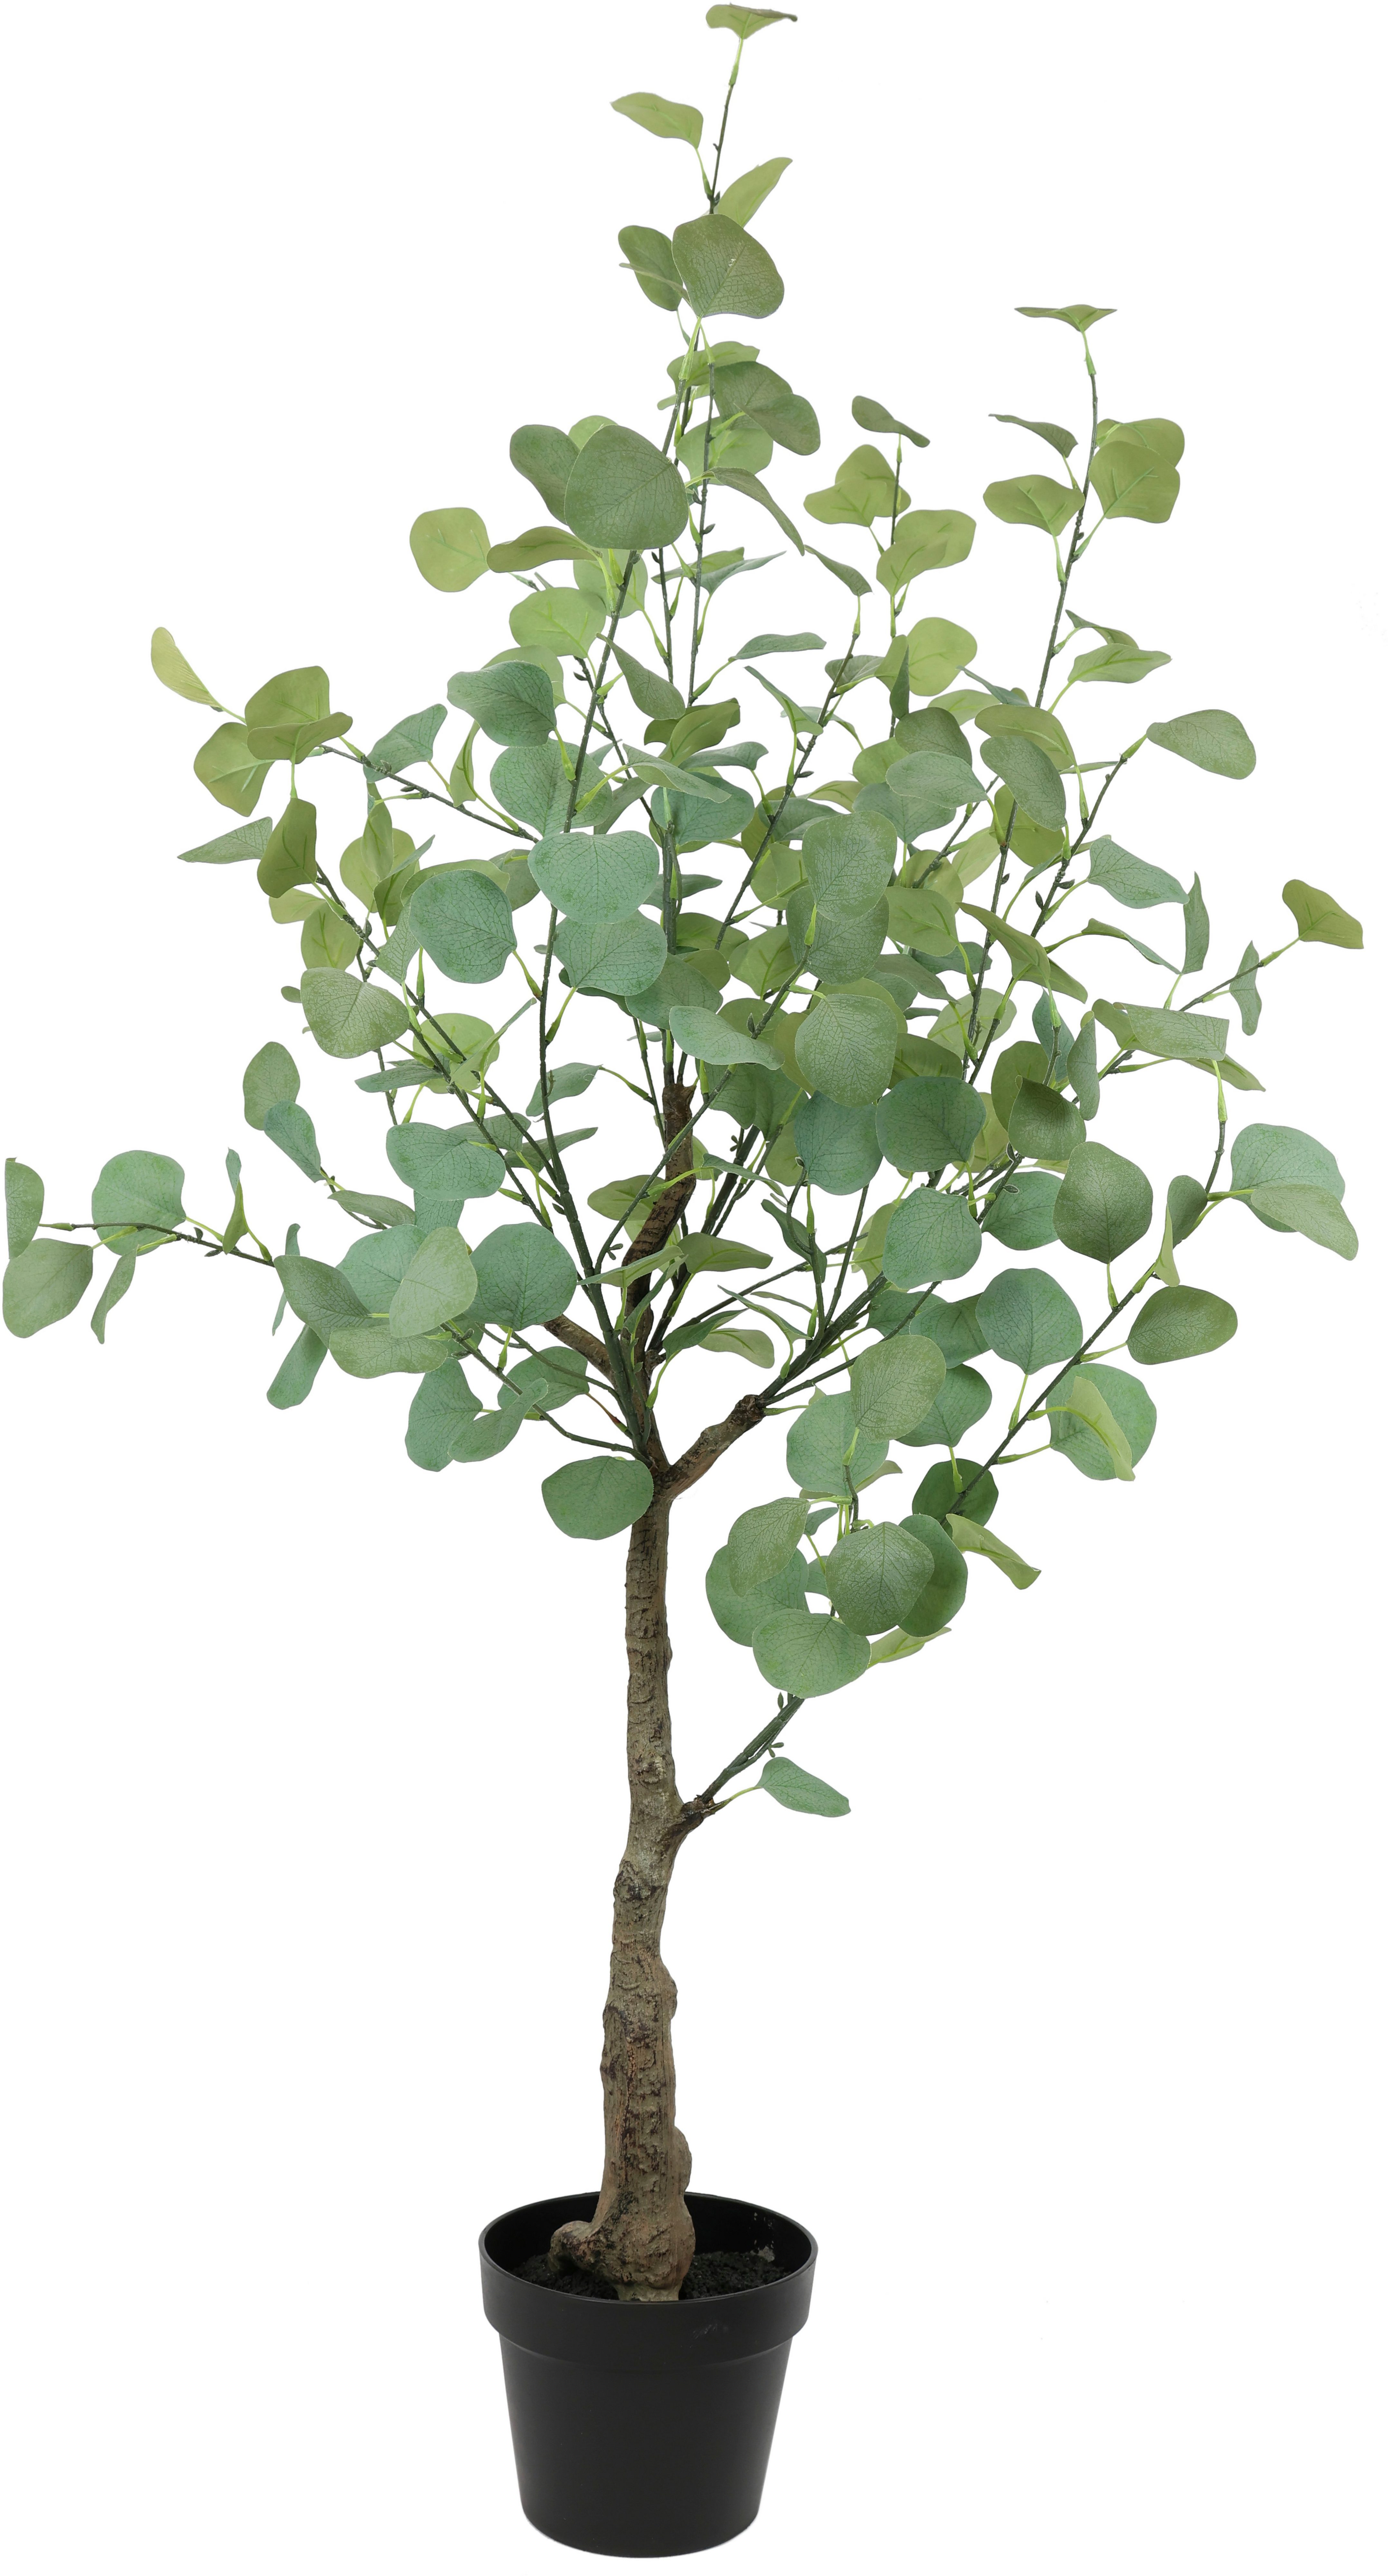 125 Eukalyptus Kunstbaum Kunstblume Deko Silber Künstlich cm, Höhe Blätter Grünpflanzen Kunstpflanze Topf Busch, im I.GE.A., Dollar Strauch Pflanze